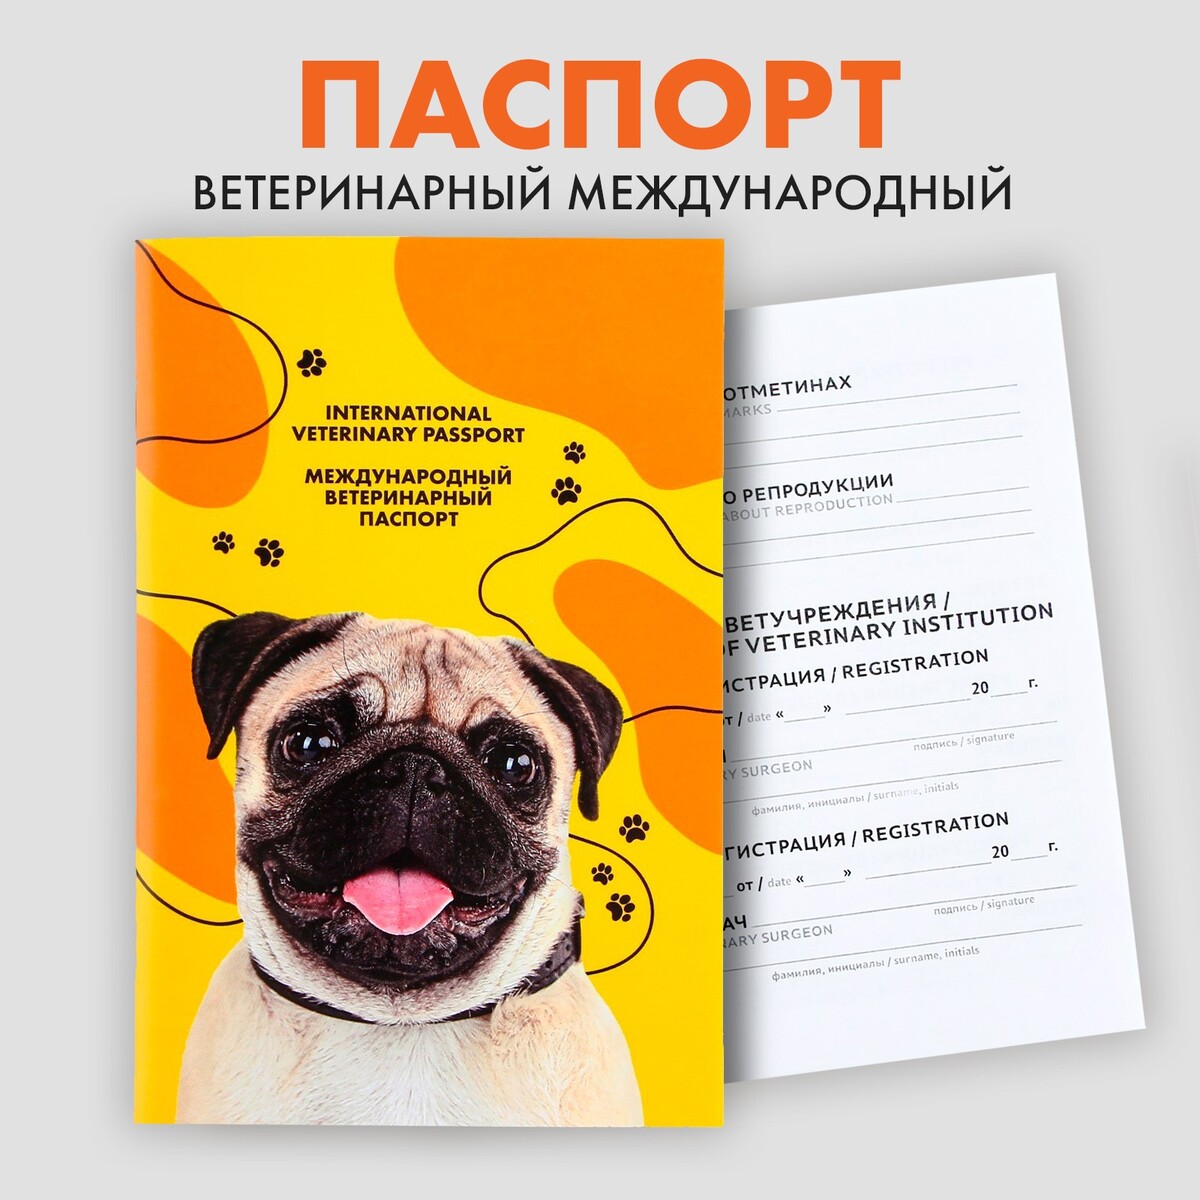 Ветеринарный паспорт международный ветеринарный паспорт международный универсальный о 36 страниц